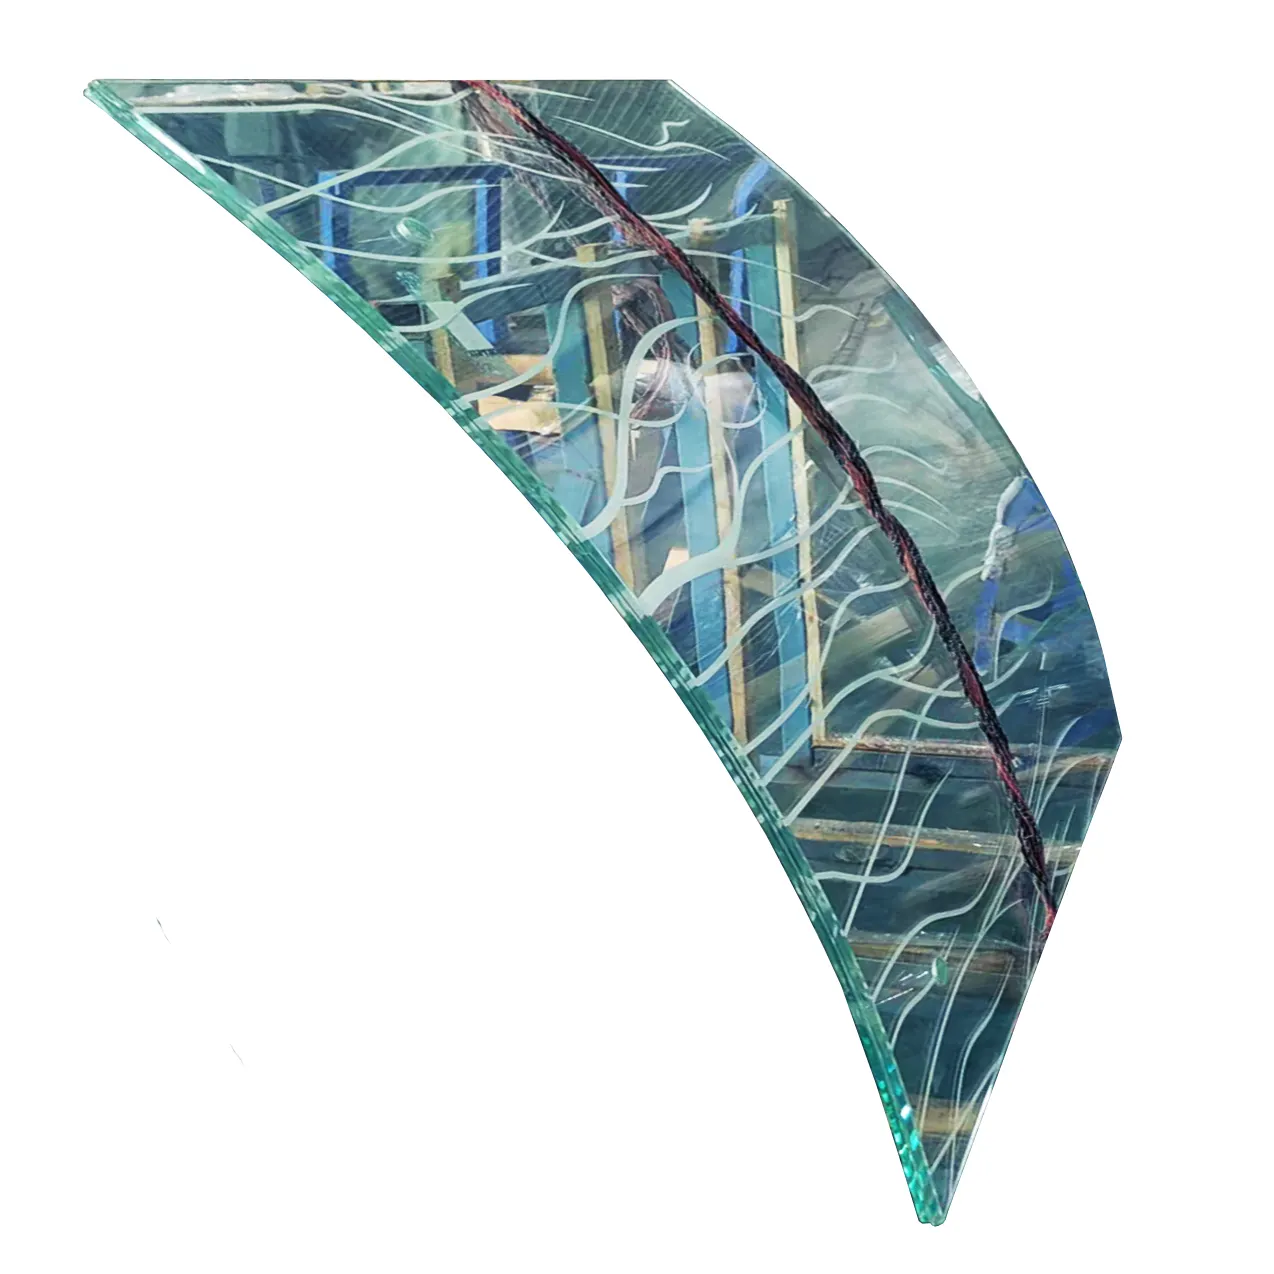 Excelência qualidade seda colorida tela curvo temperado laminado segurança vidro para construção divisória